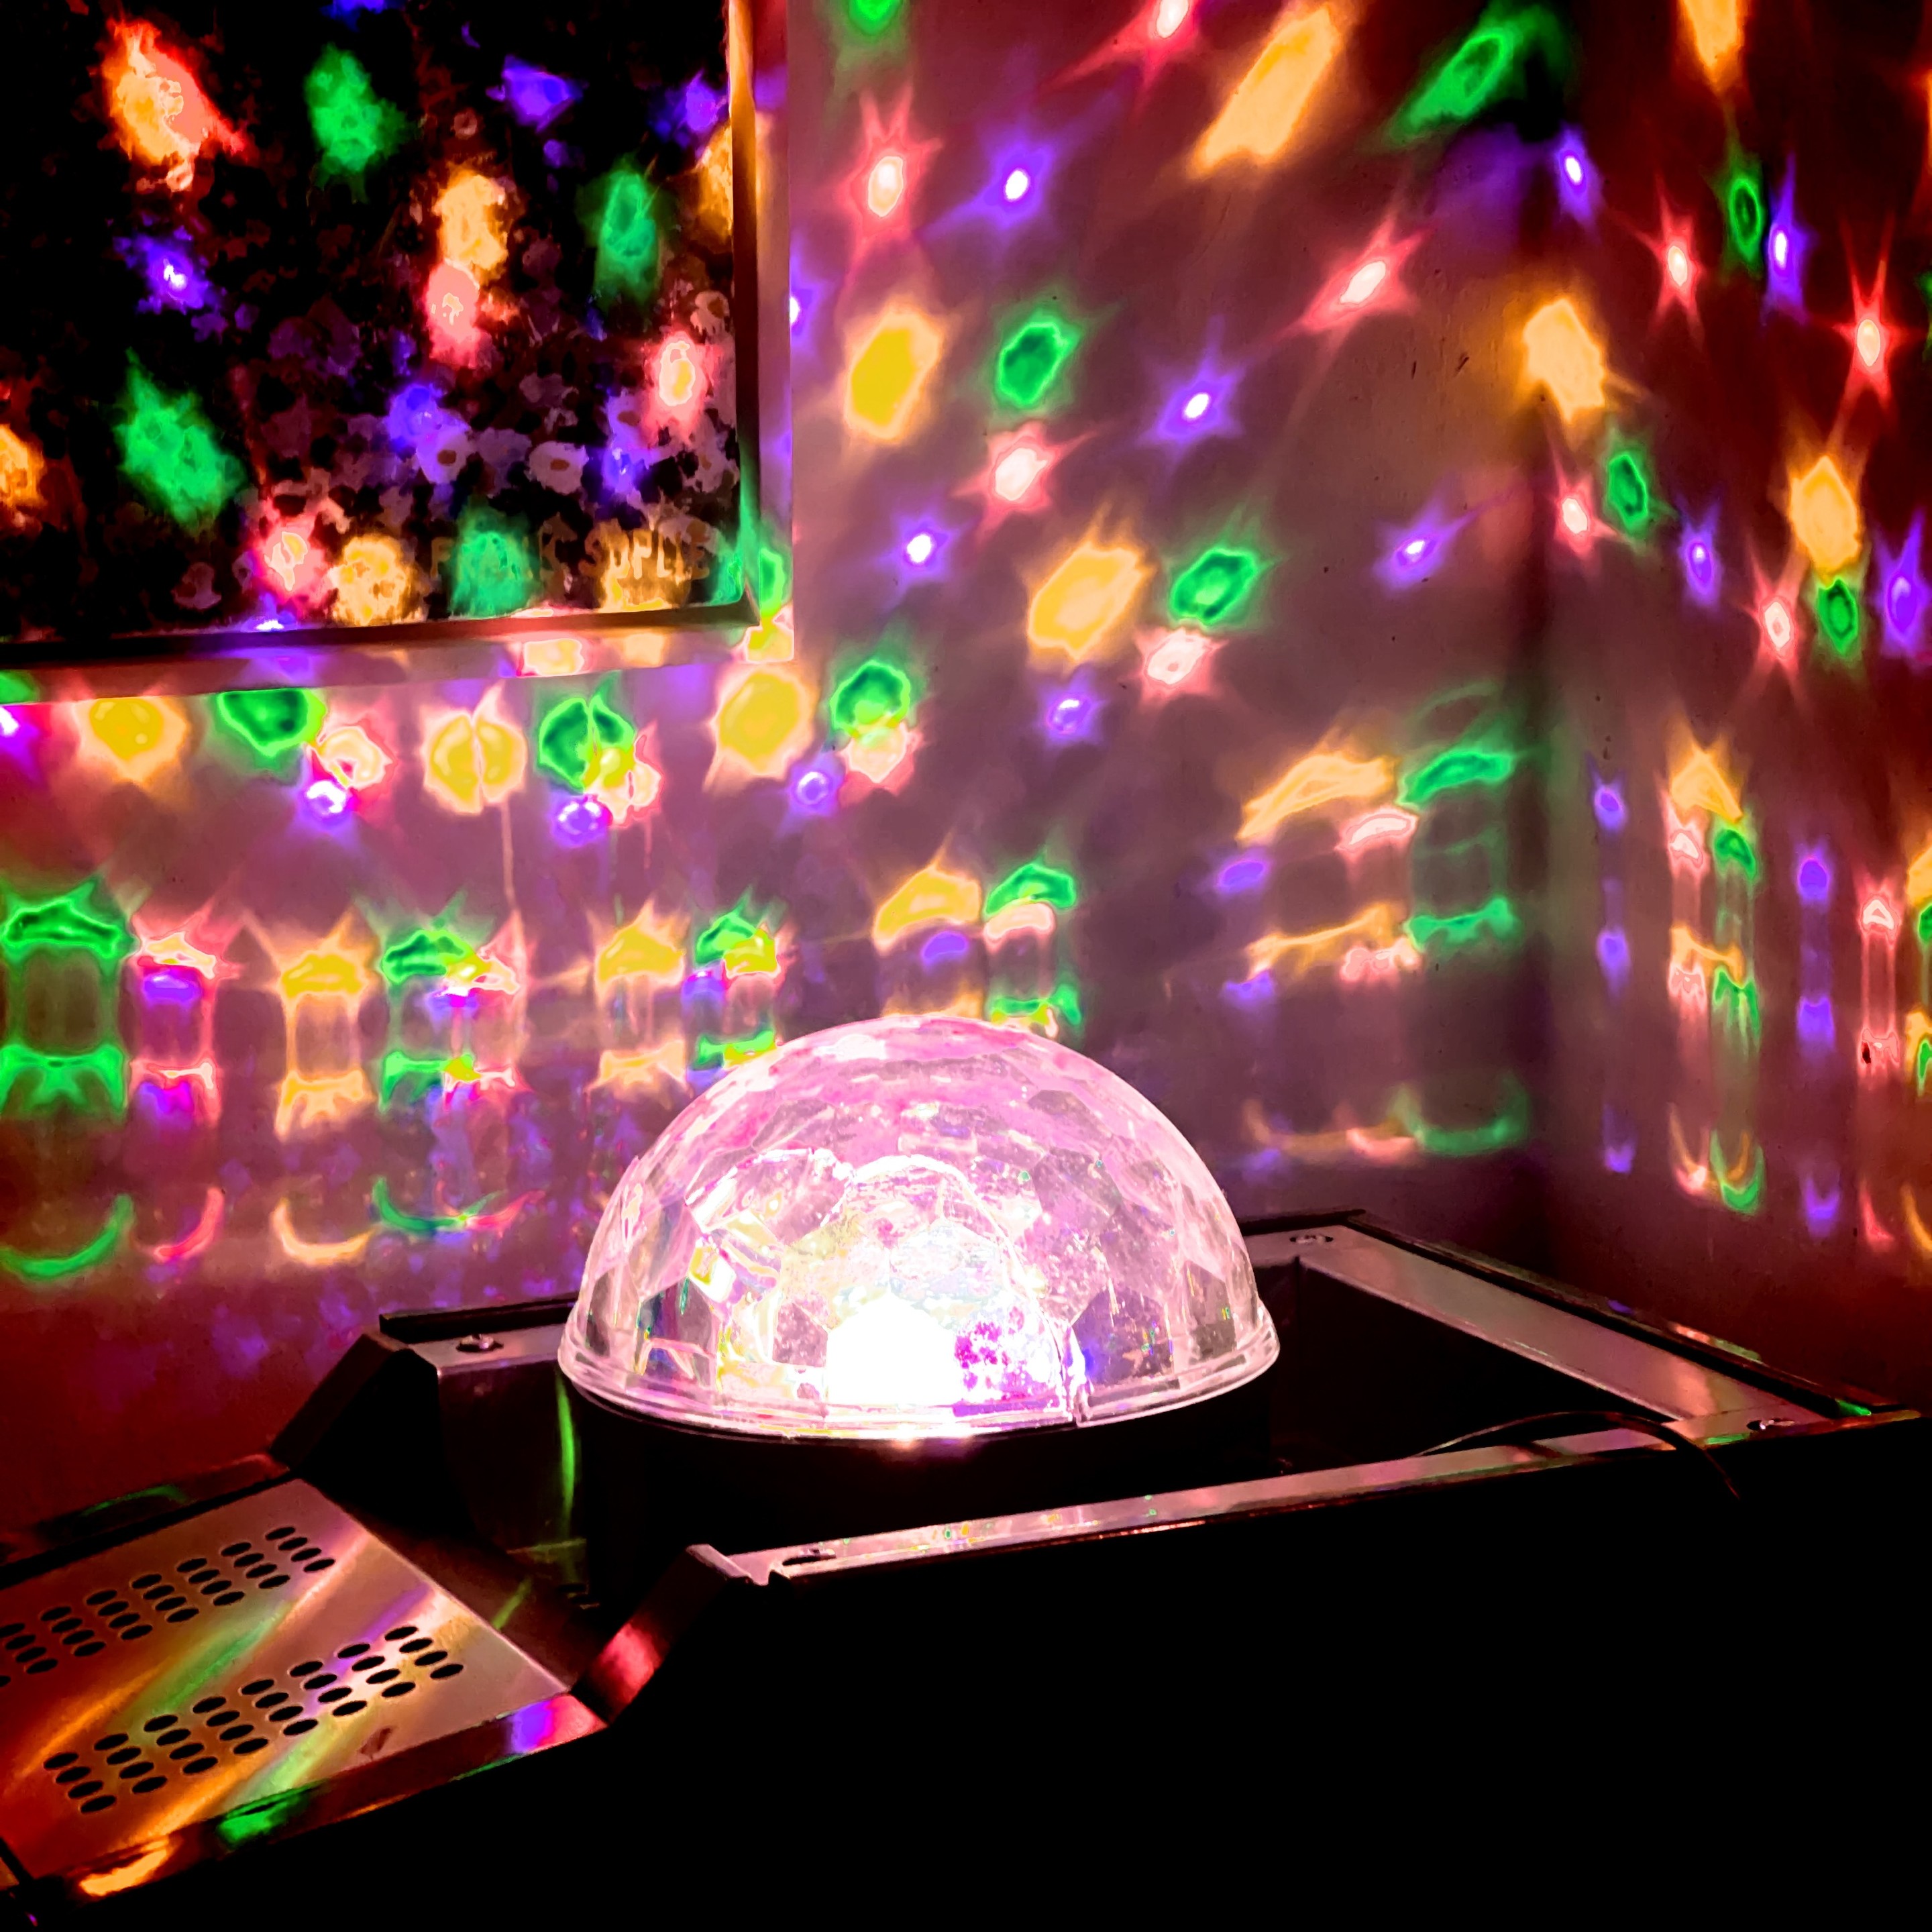 Ein Discolichtprojektor wirft bunte, gemusterte Lichter an Wände und Decke.